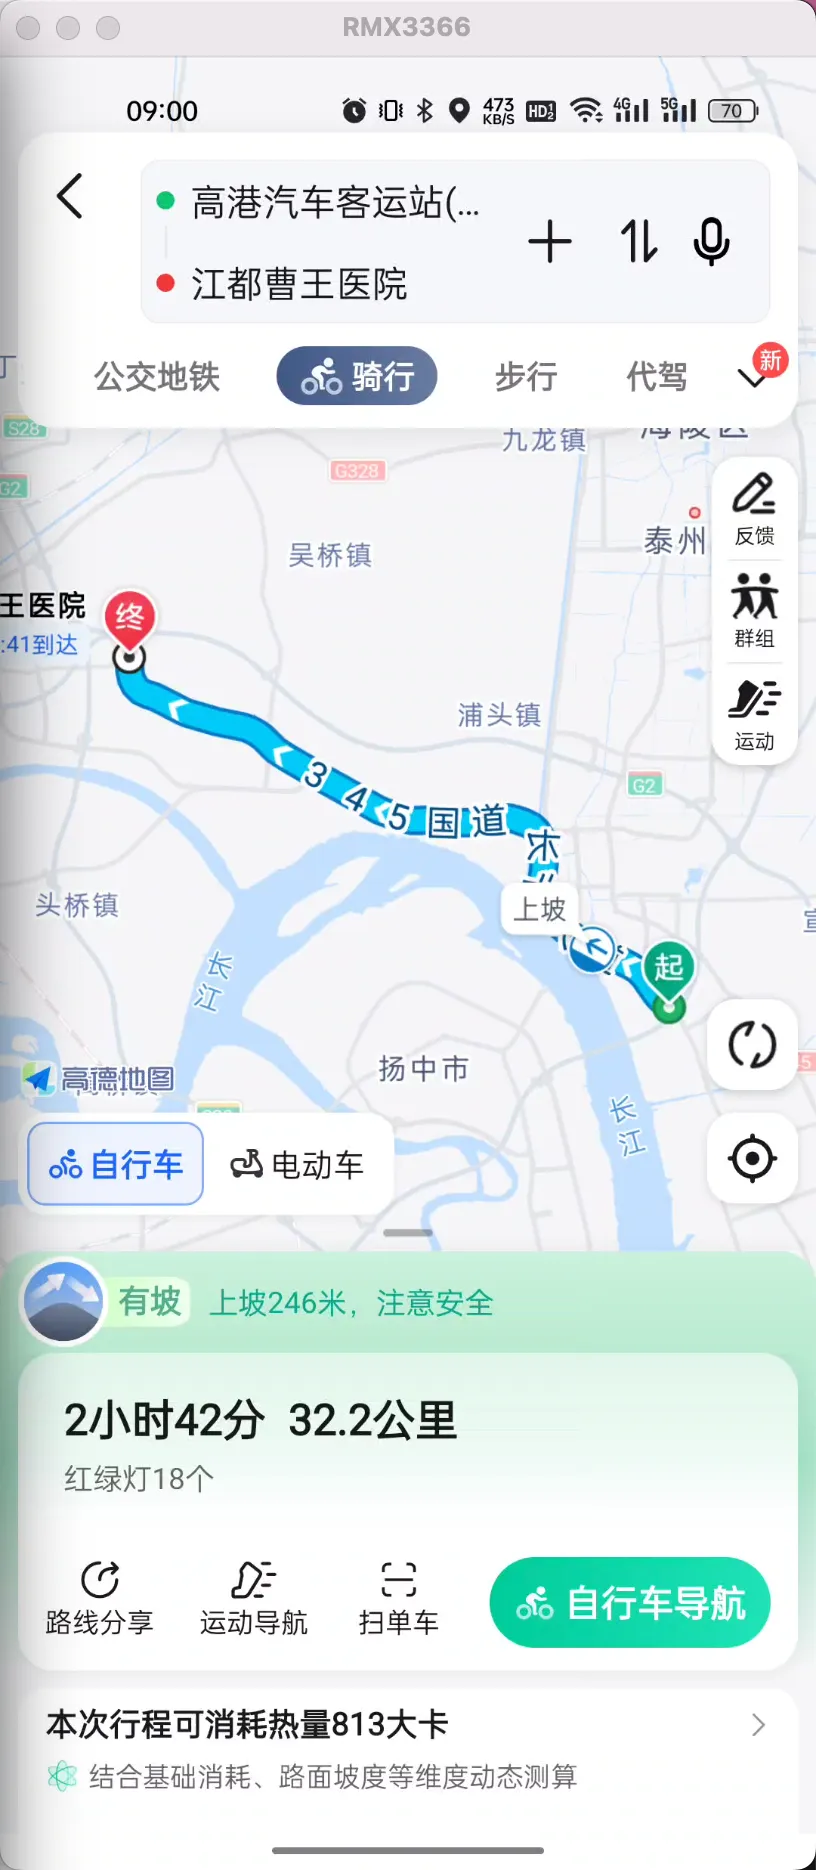 （30KM）高港汽车客运站 - 江都曹王医院